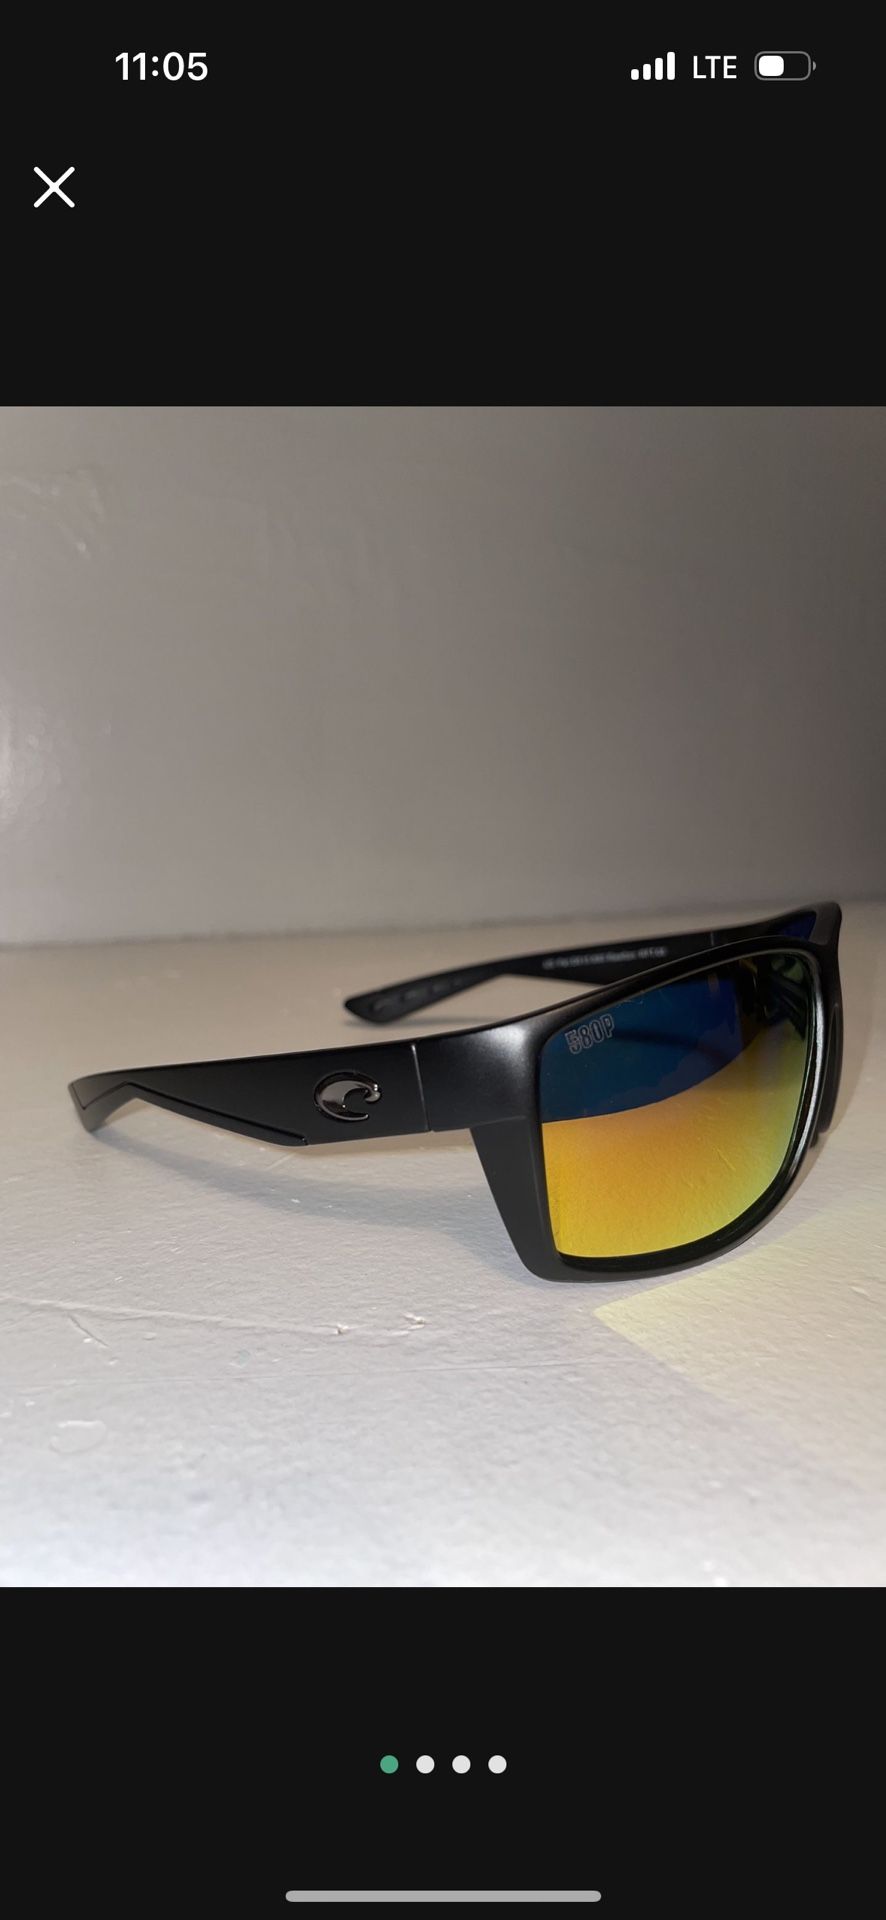 Costa Del Mar Tuna Alley 580P Polarized Sunglasses